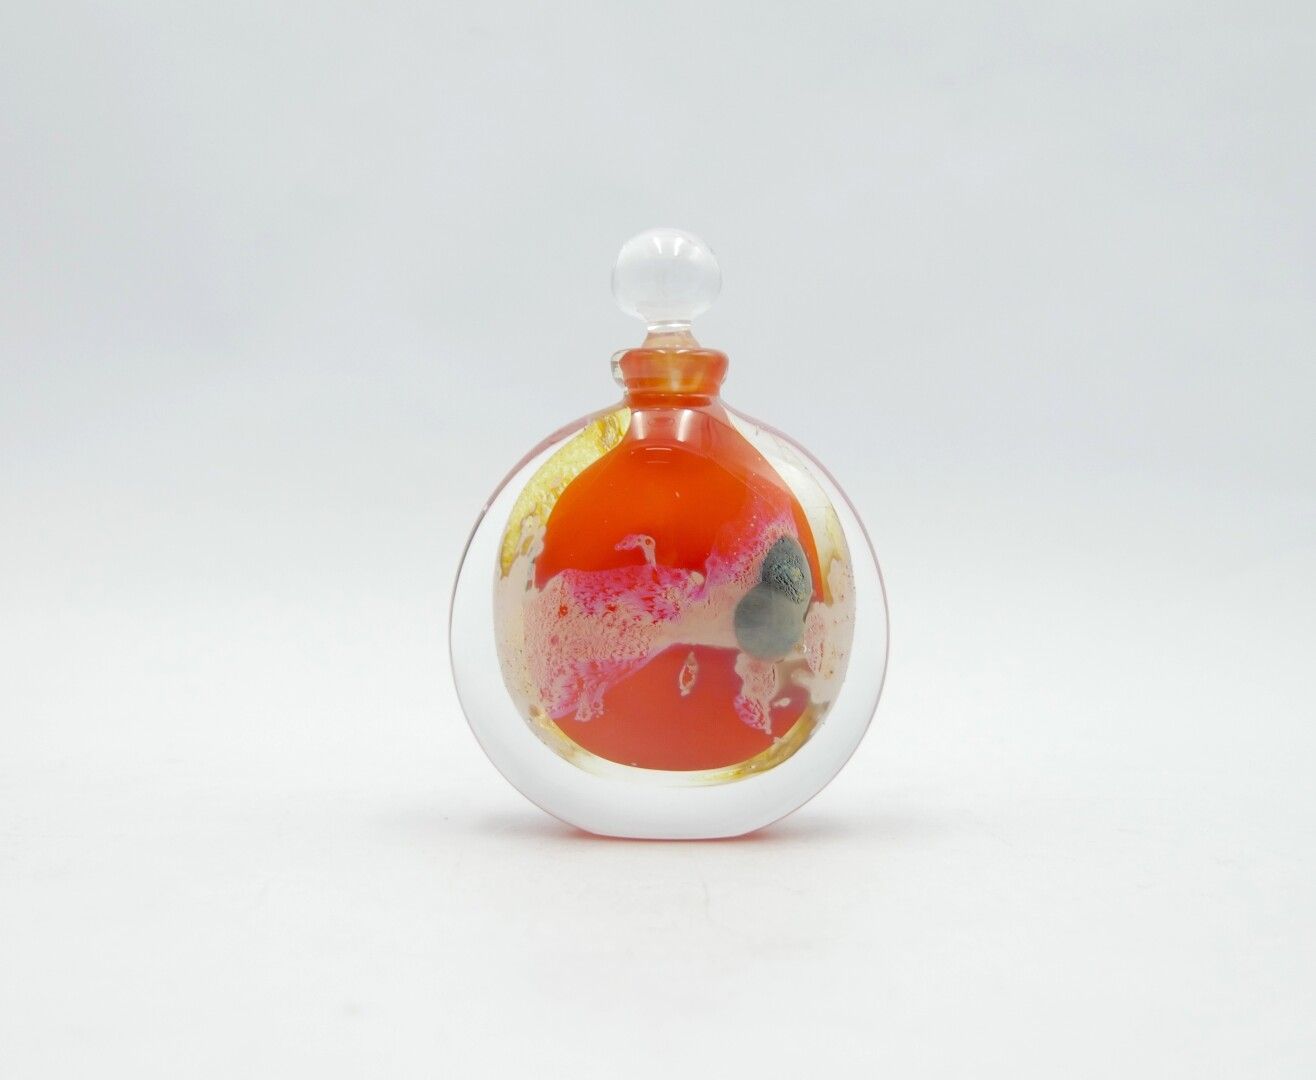 Null 埃尔韦-拉斯帕尔

橙色、白色和蓝色吹制玻璃小瓶，半透明玻璃瓶塞

标记为Allex 90，Hervé Raspail R89

H.11.5厘米。约&hellip;